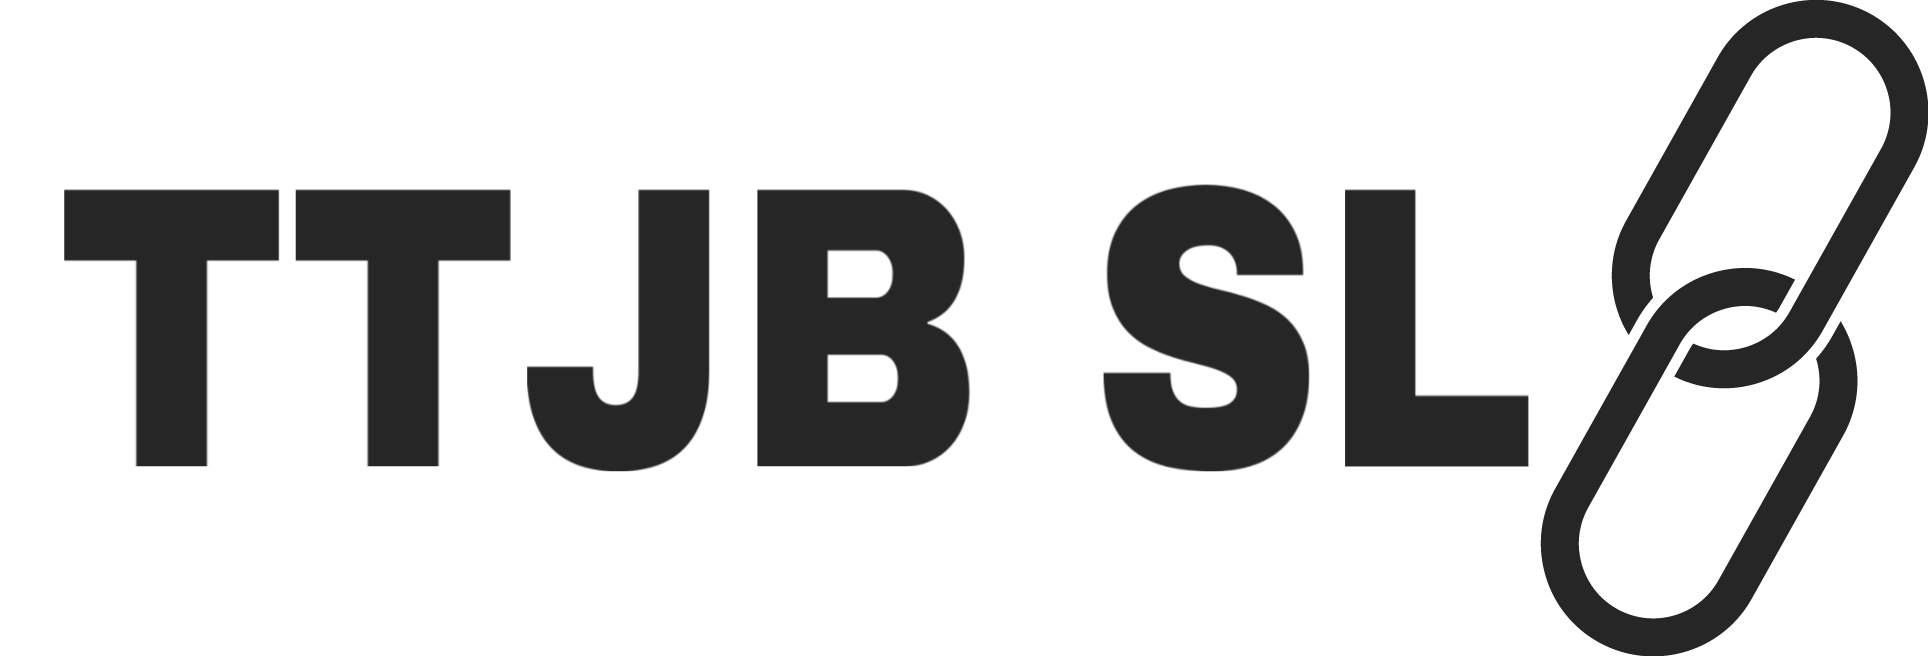 TTJB Short Link Logo